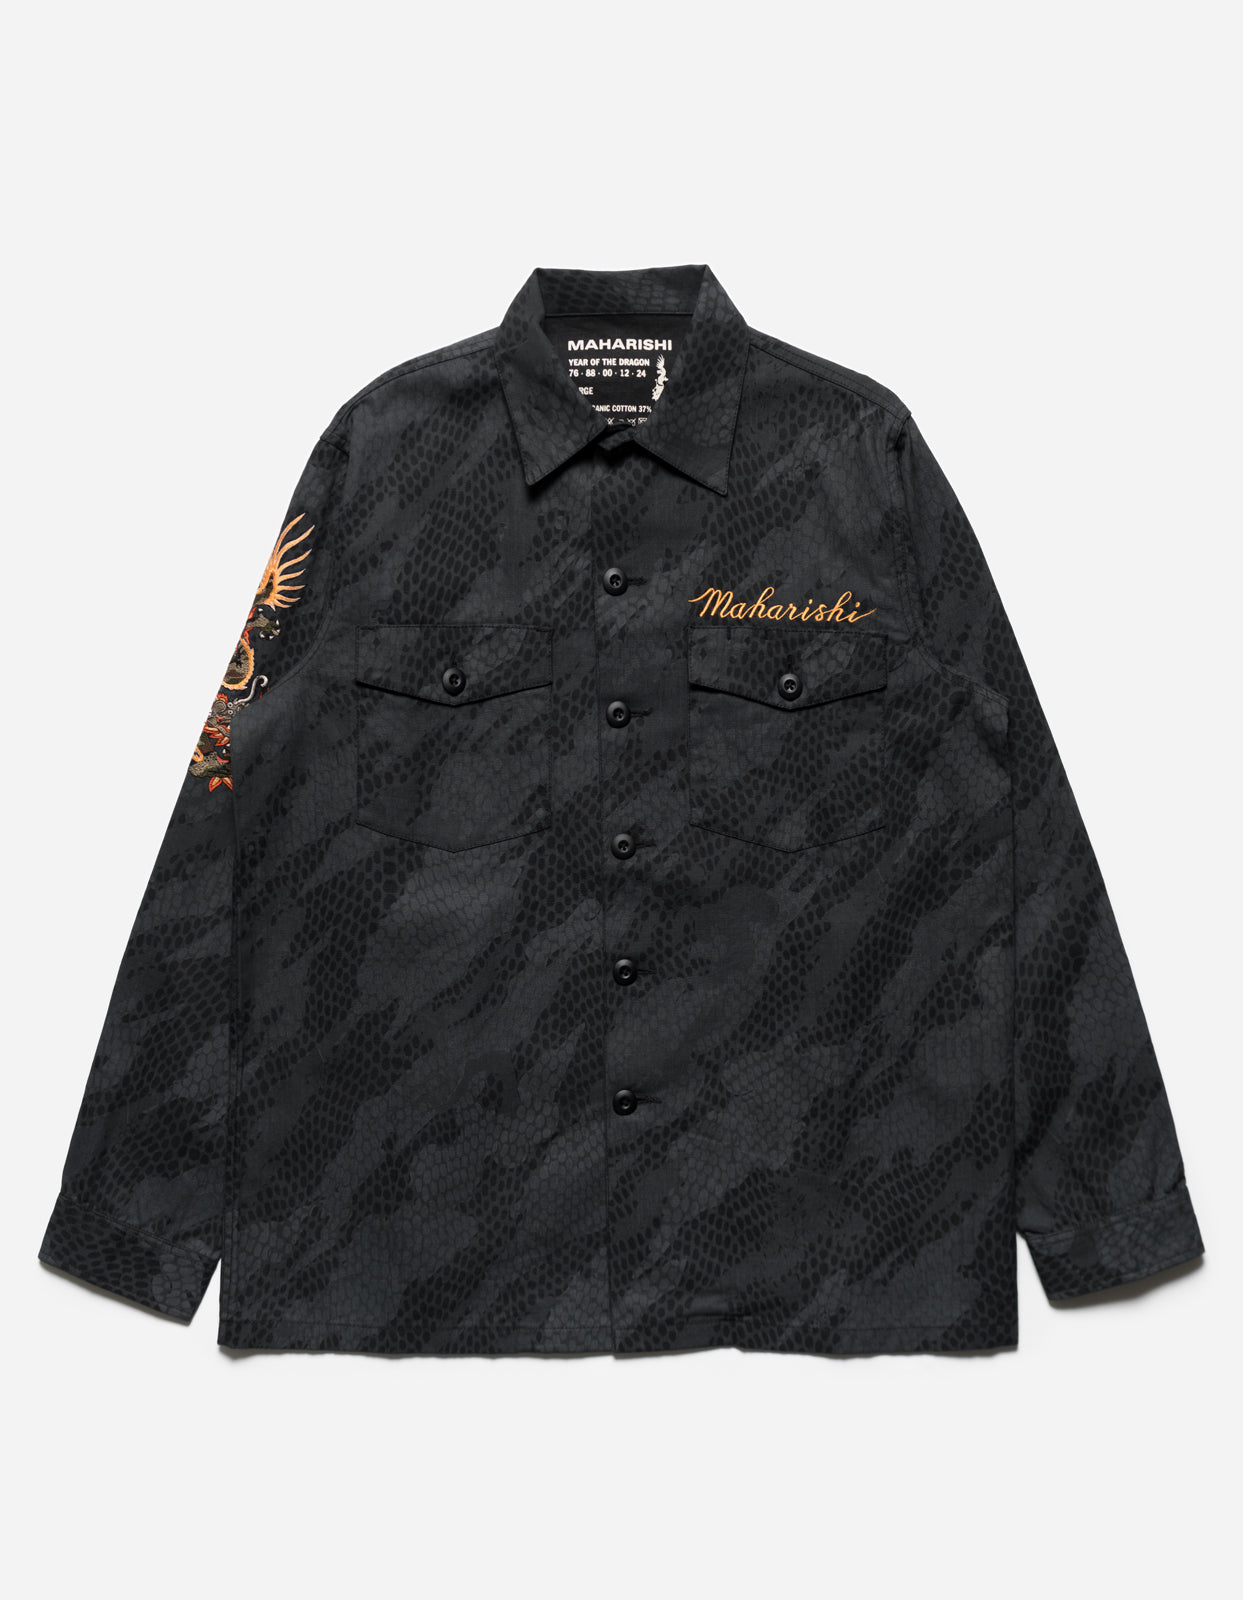 Maharishi Black Cargo Shirt